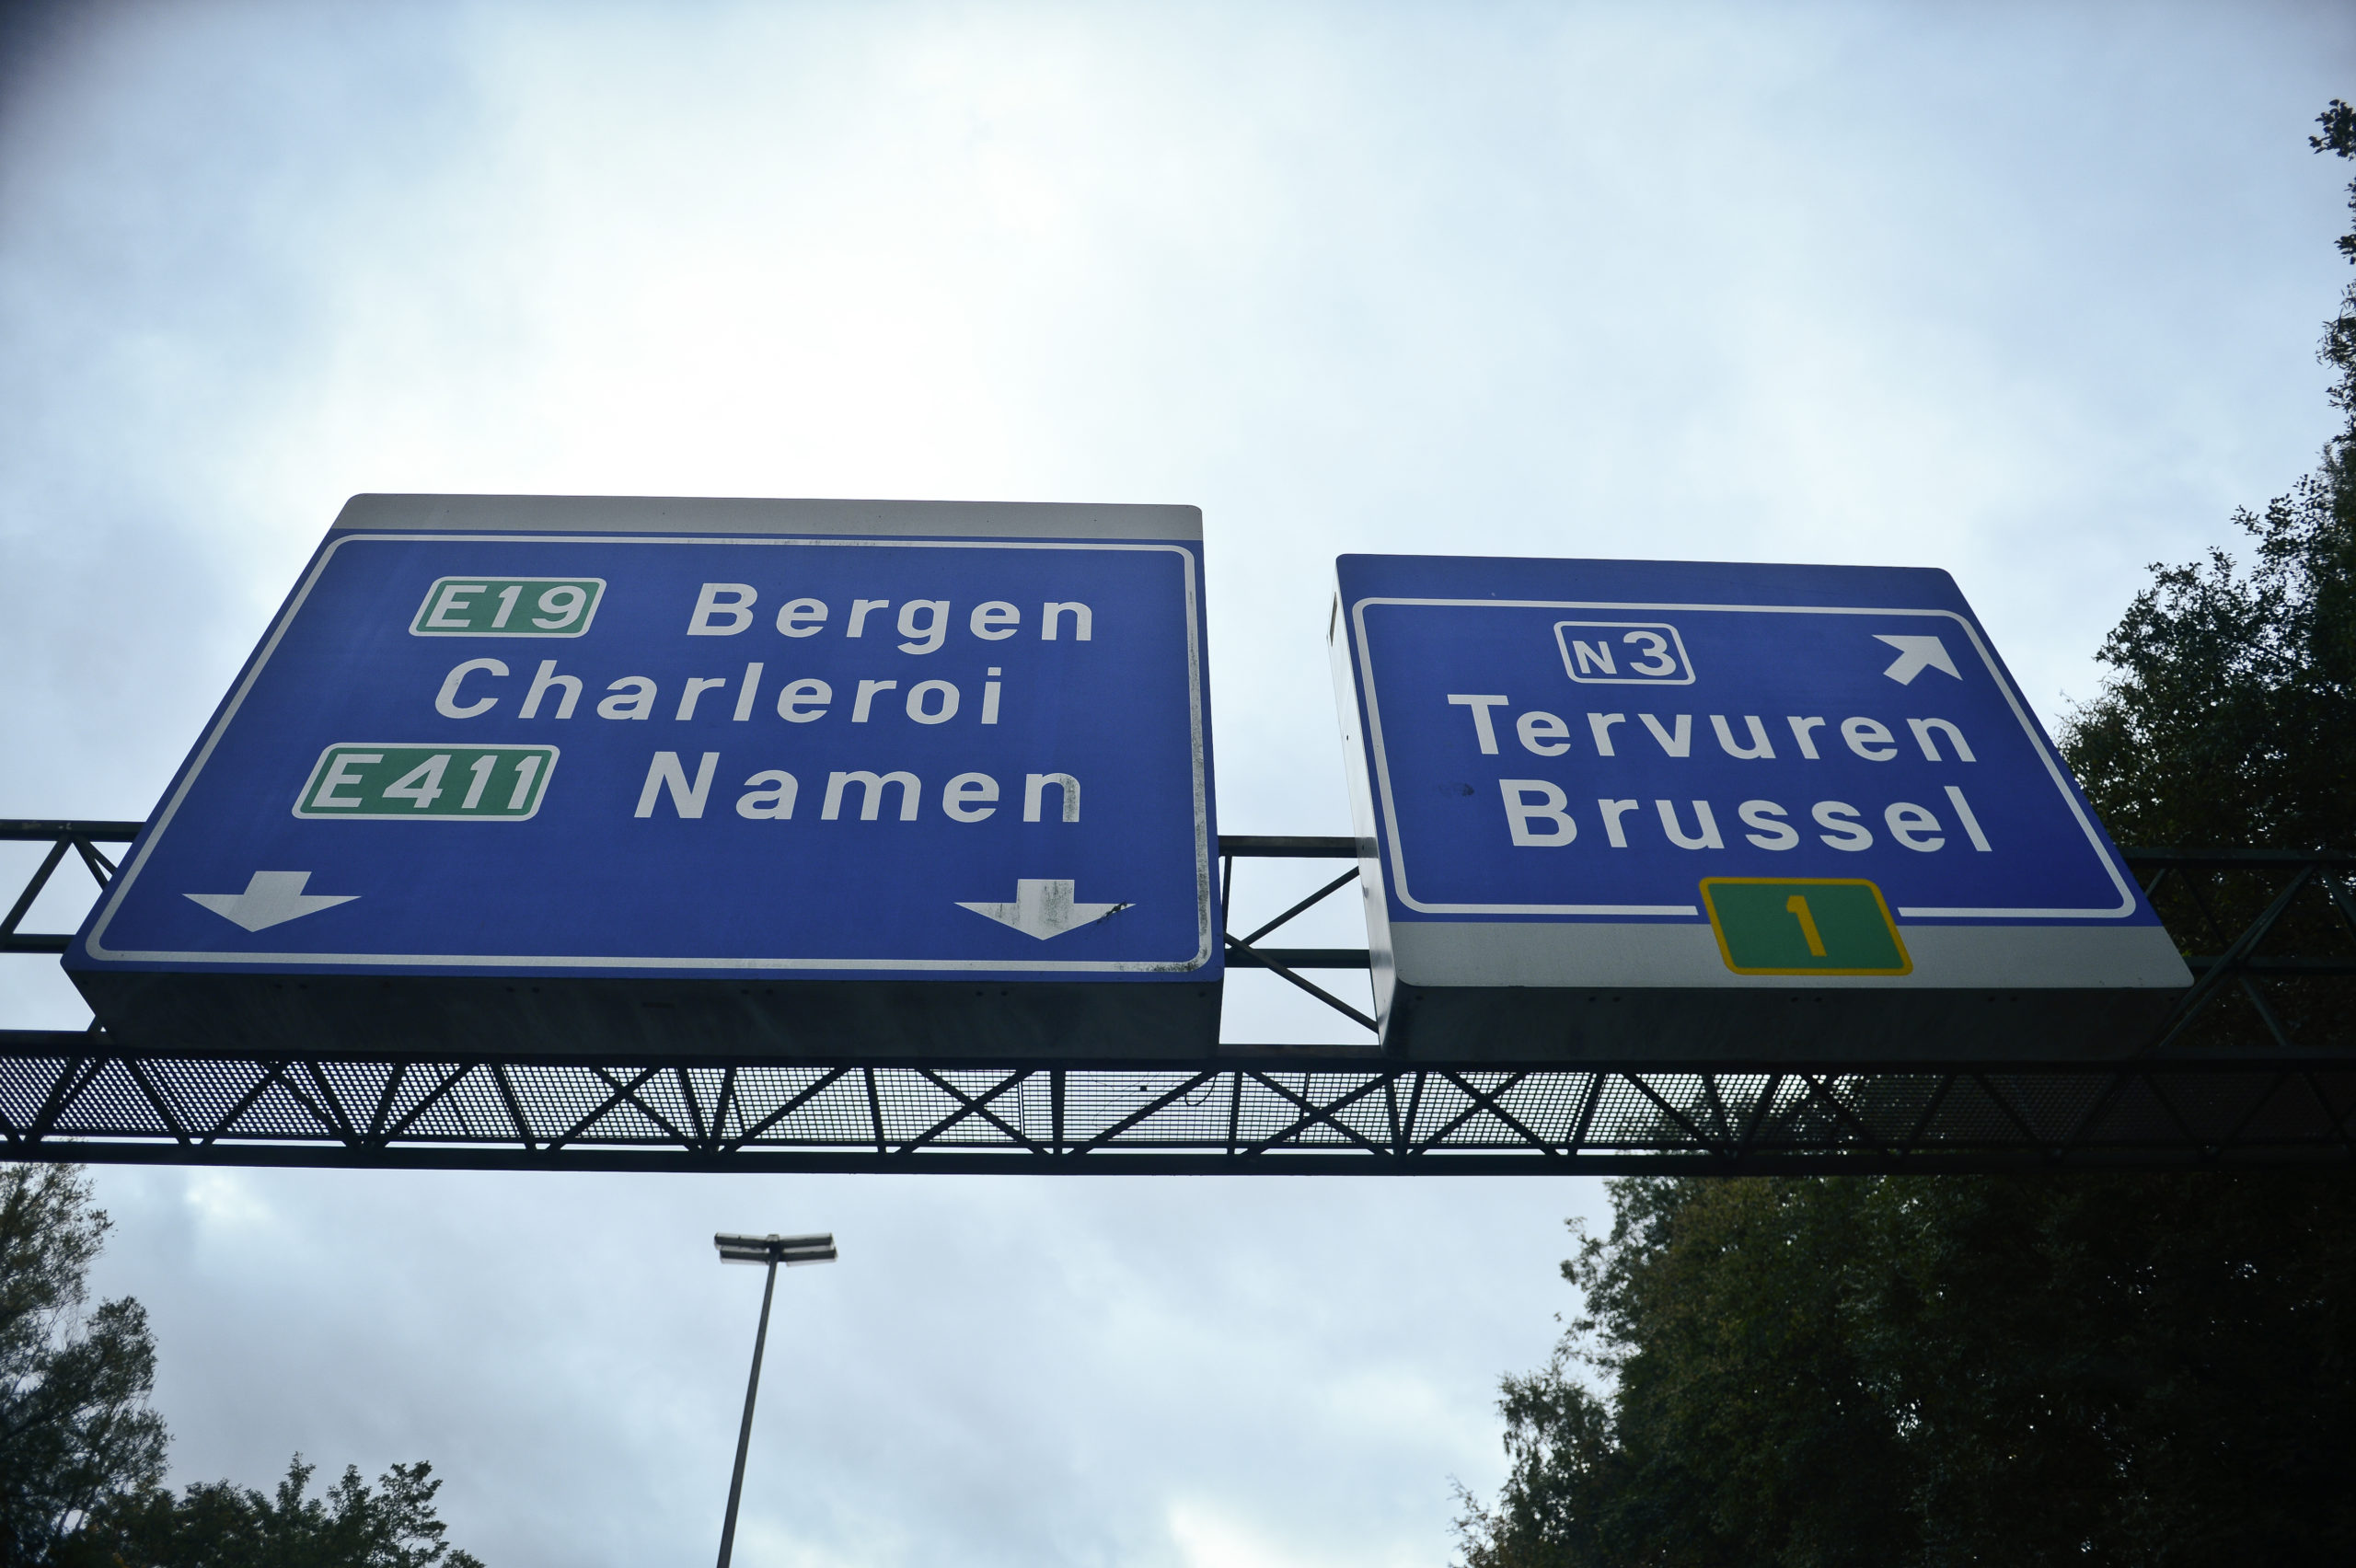 Bruxelles : bagarre autour du projet de réduction des voies sur l'avenue de Tervuren